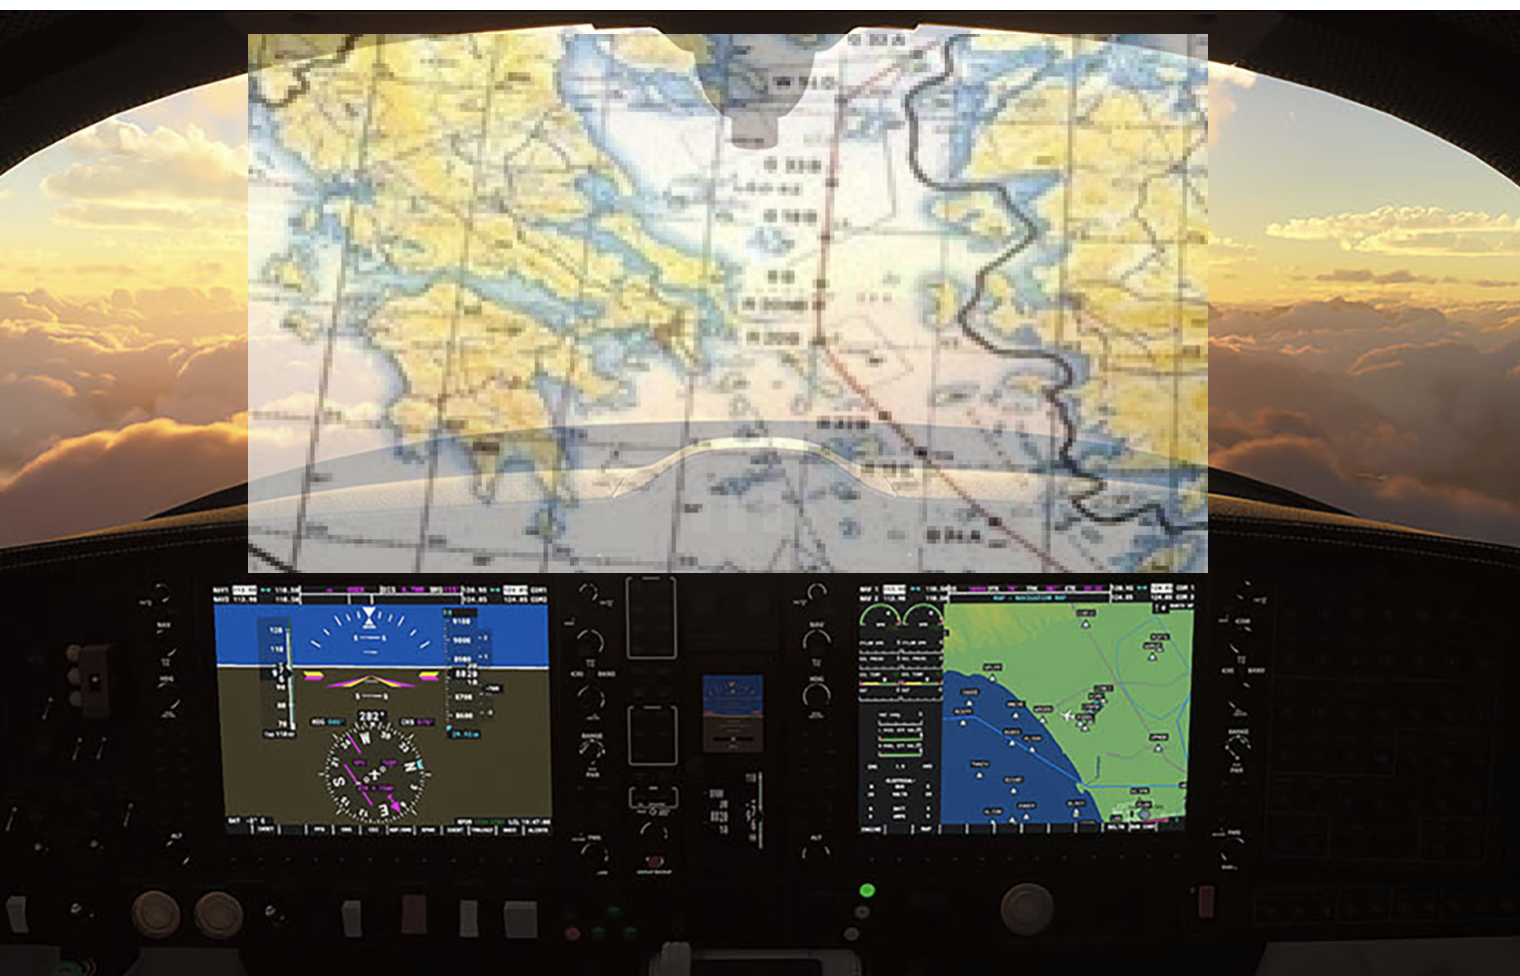 Η Microsoft κάνει επενδύσεις στην Ελλάδα διχοτομώντας το Αιγαίο με το Flight Simulator -2000!